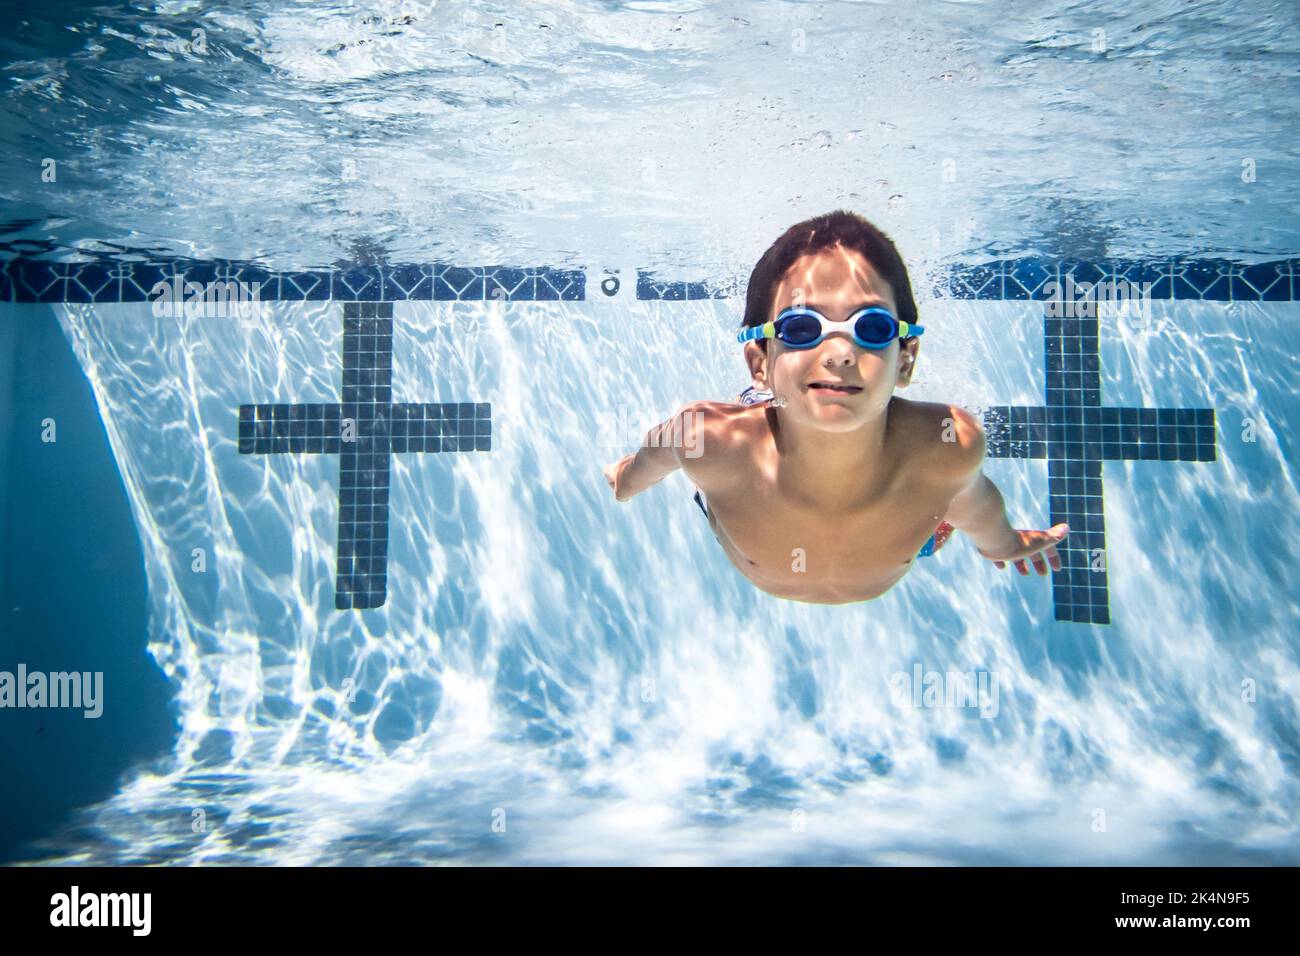 Fotografia subacquea del ragazzo con occhiali in piscina. Foto Stock